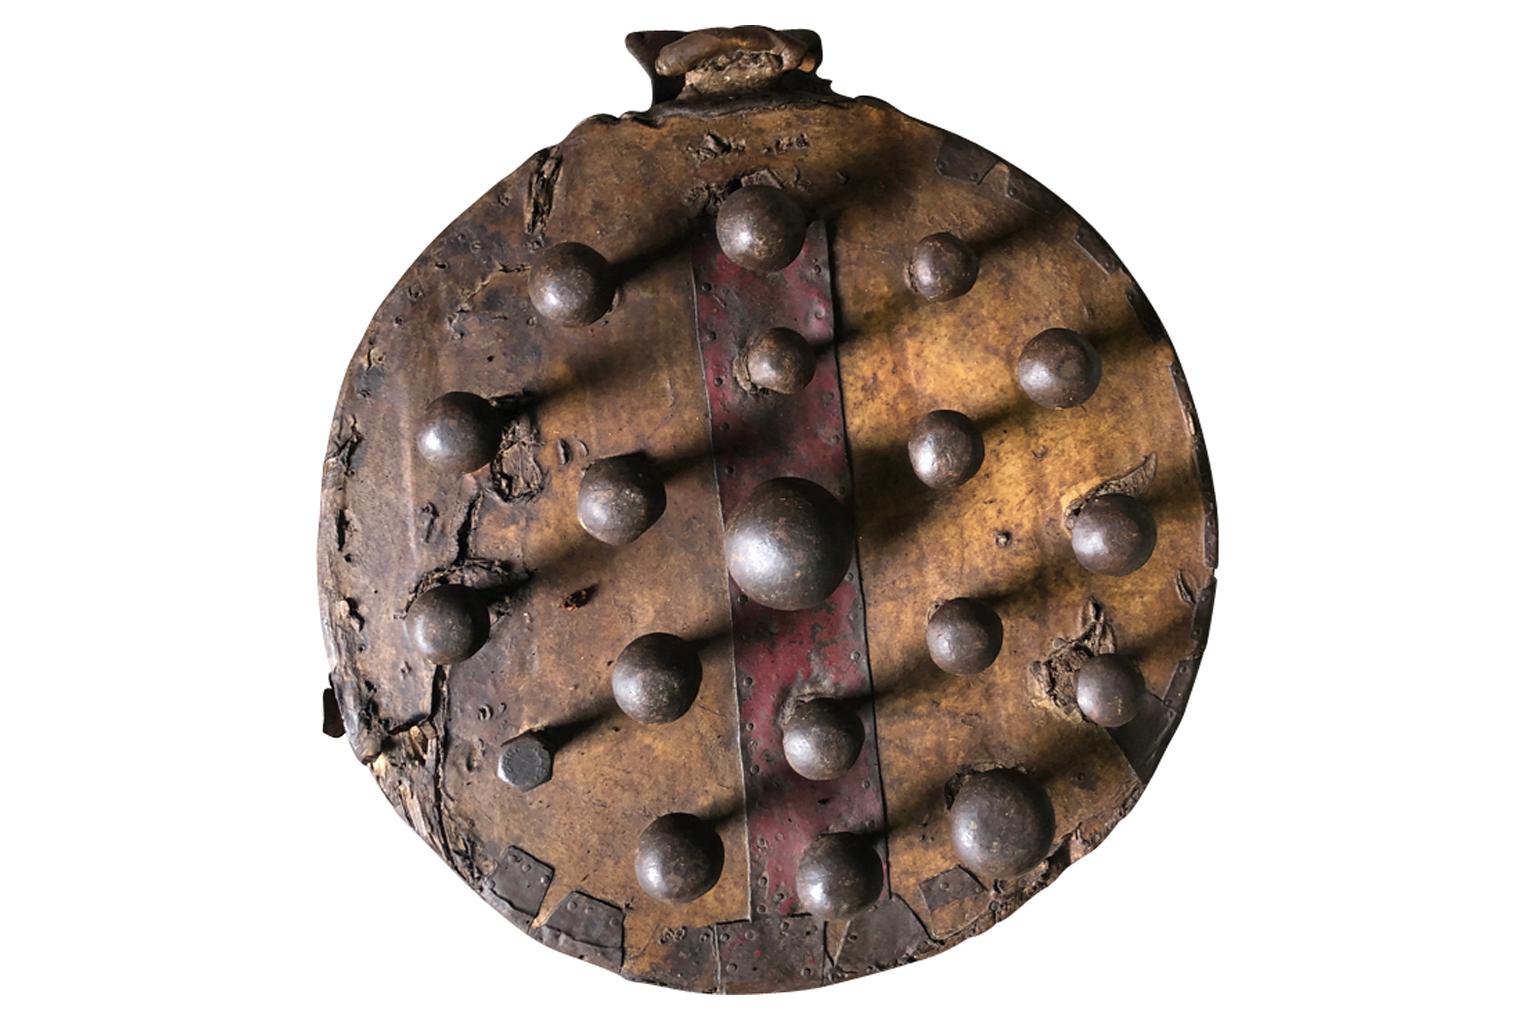 Un très intriguant gant du 18ème siècle en bois et cuir avec des protubérances en fer. La main est insérée dans le gant avec des positions pour tous les doigts - comme un gant de baseball. L'objectif initial de cette pièce très intéressante est un